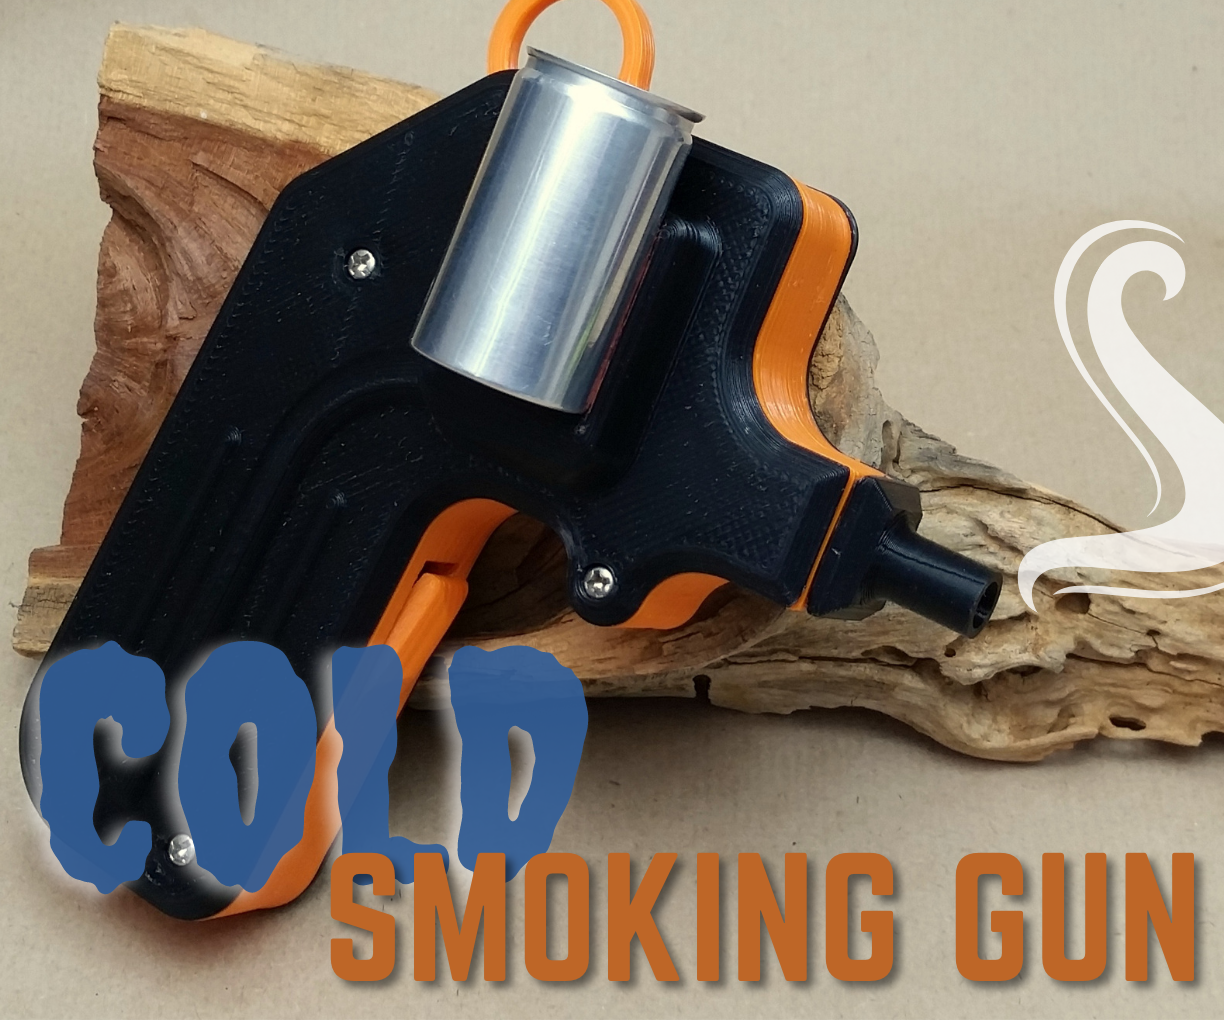 DIY Food Cold Smoking Gun!